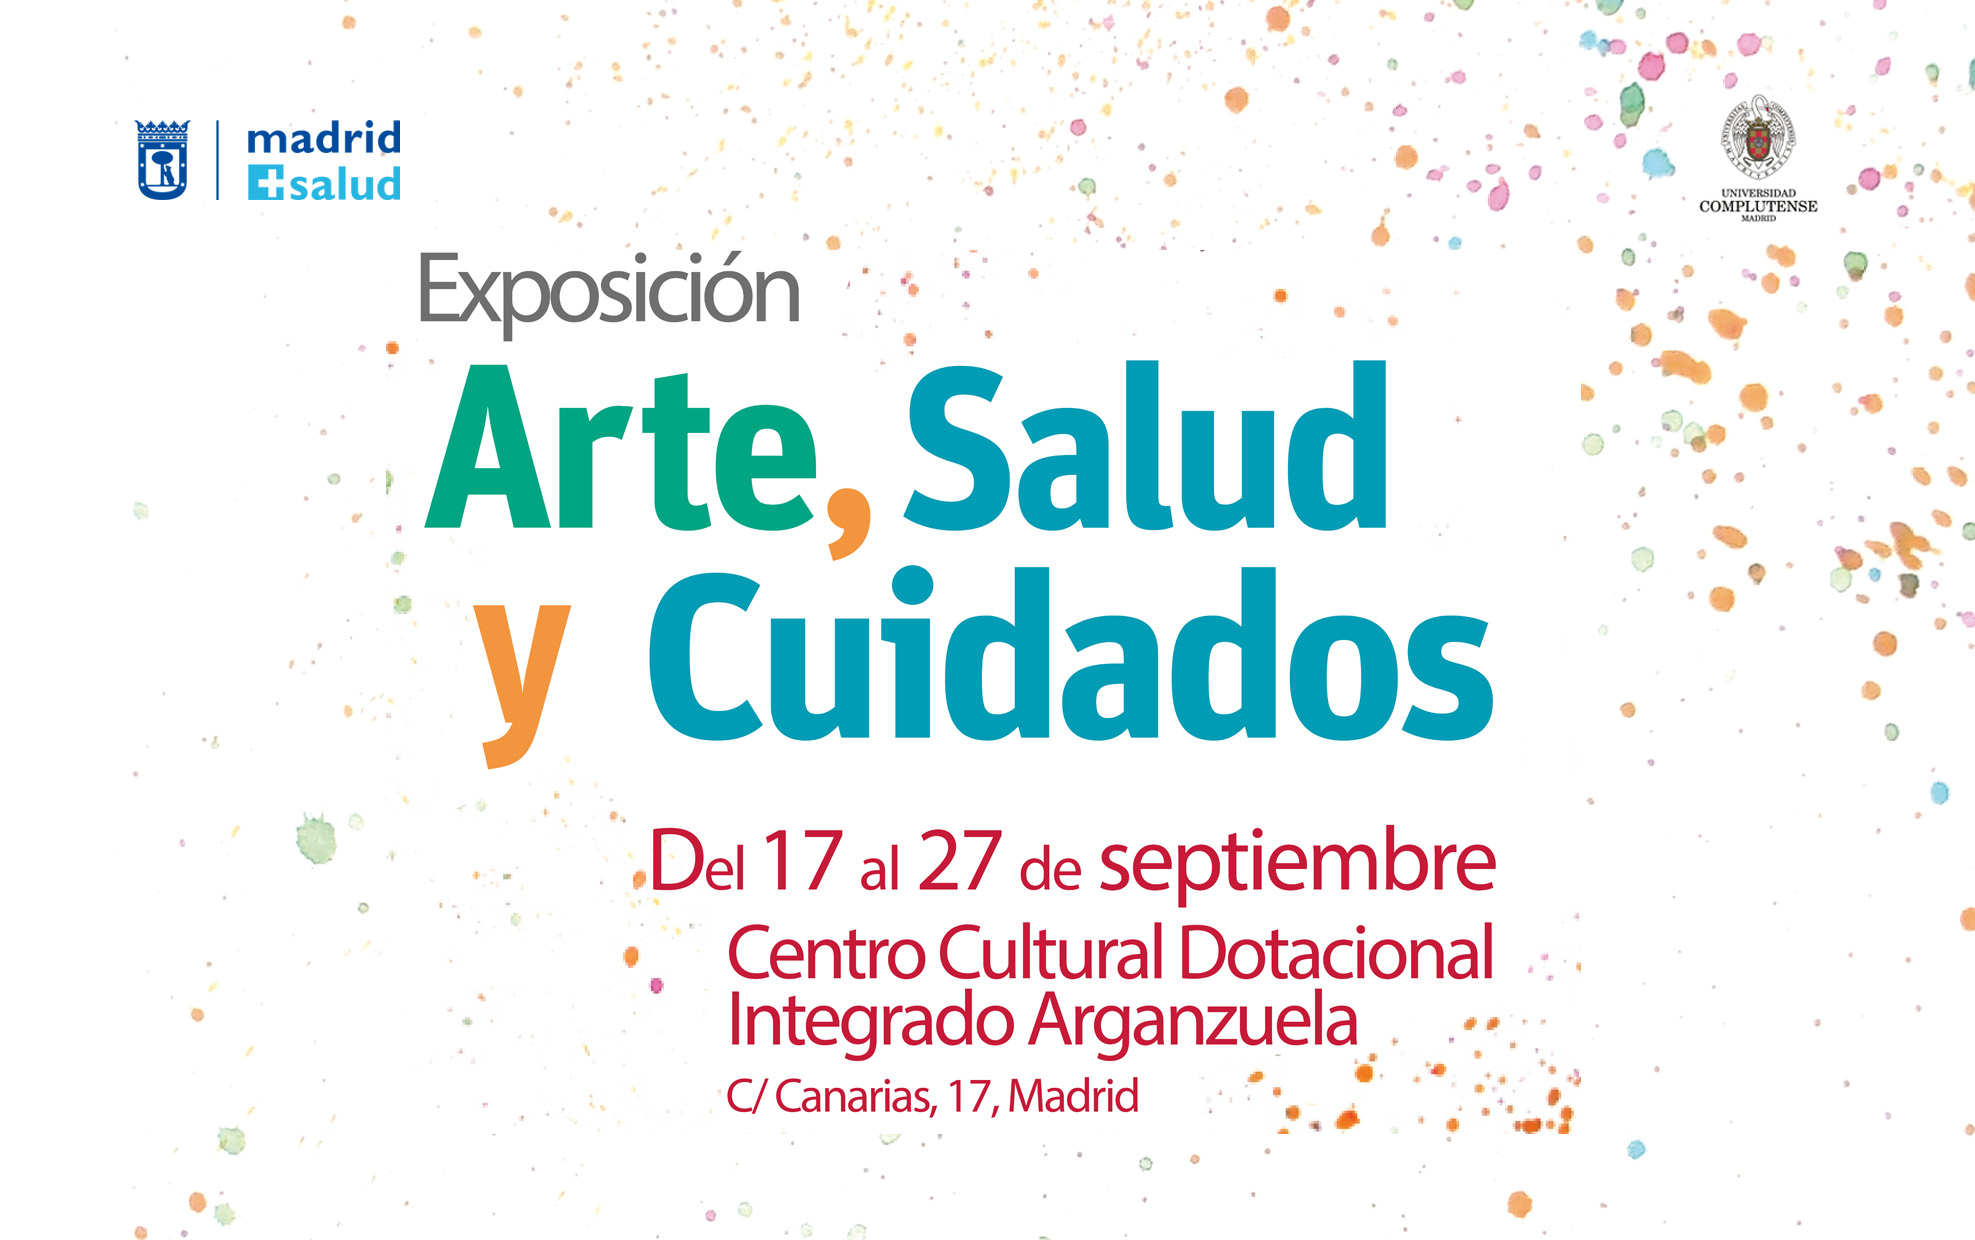 Jornada ARTE, SALUD Y CUIDADOS. 30 de septiembre 2019, CentroCentro